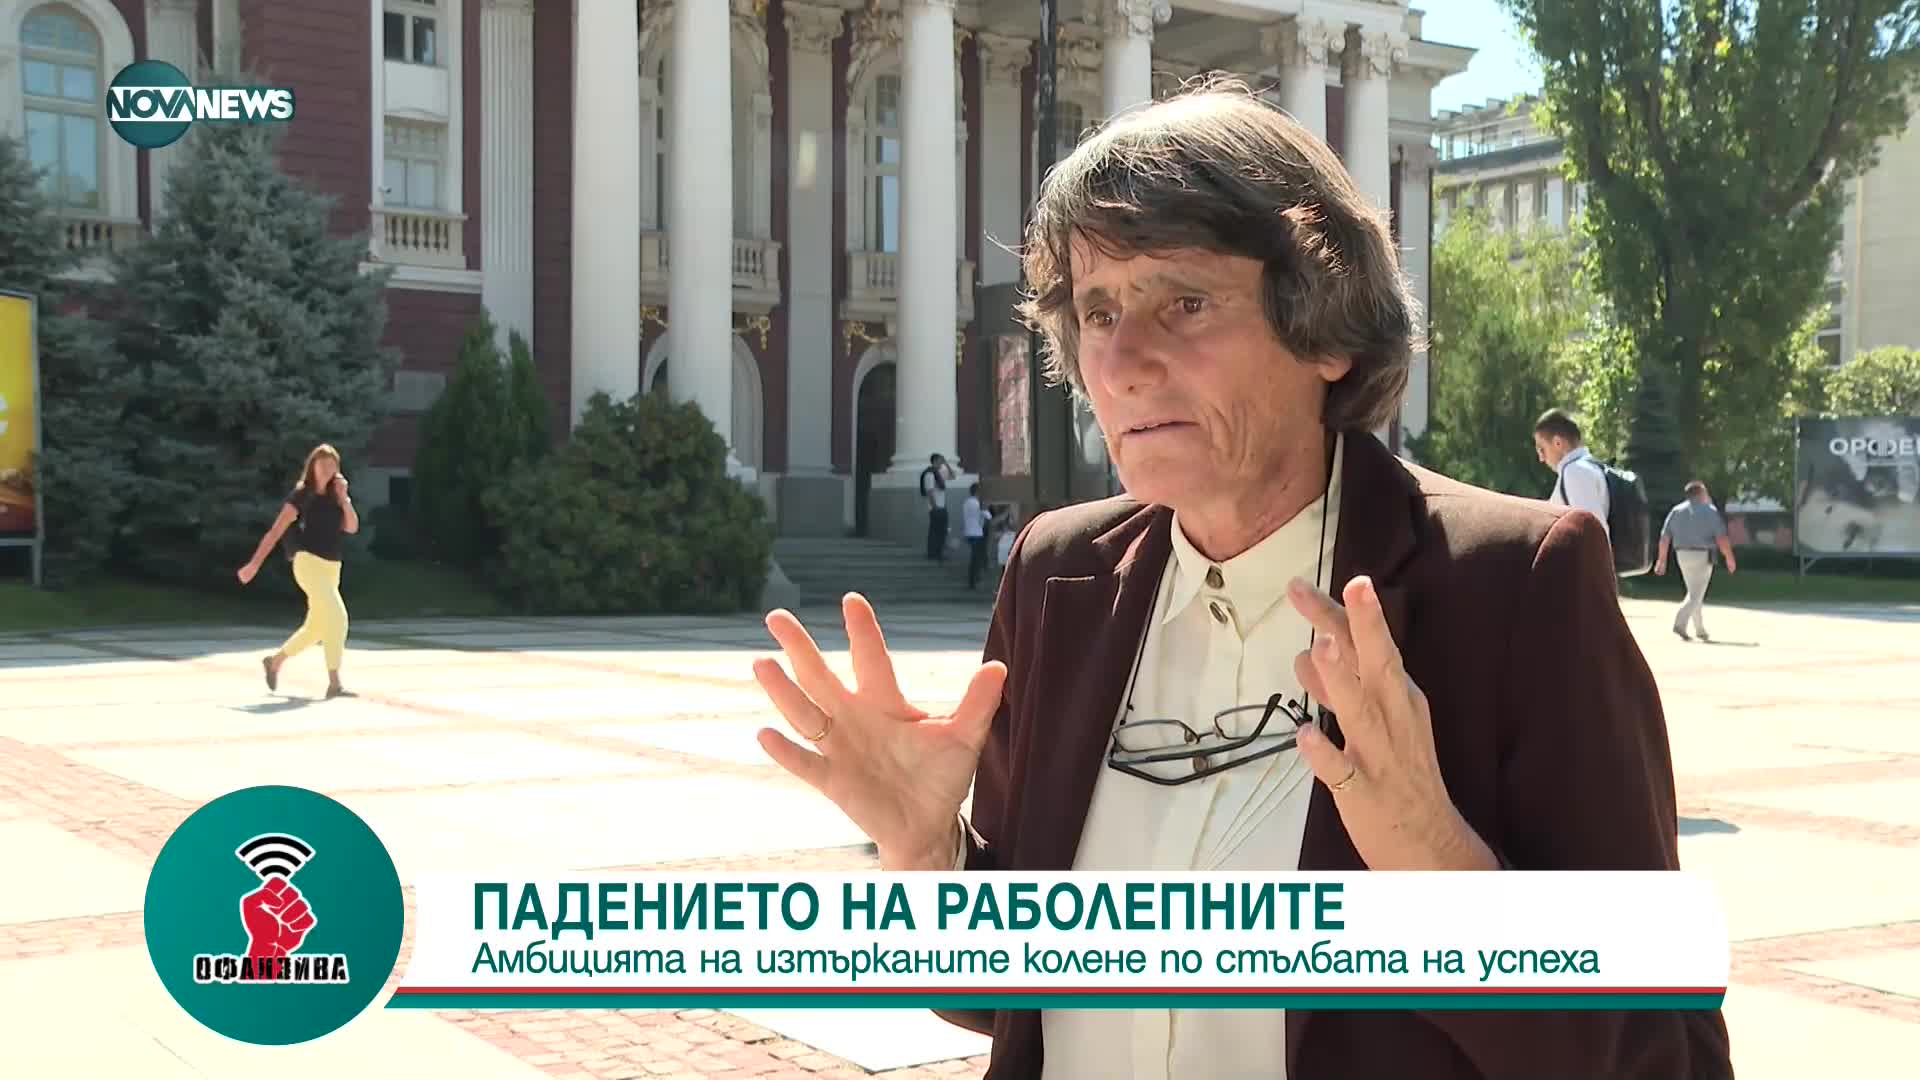 Здравка Евтимова: България не спада в графата "страхливци", затова не подлежи на смърт